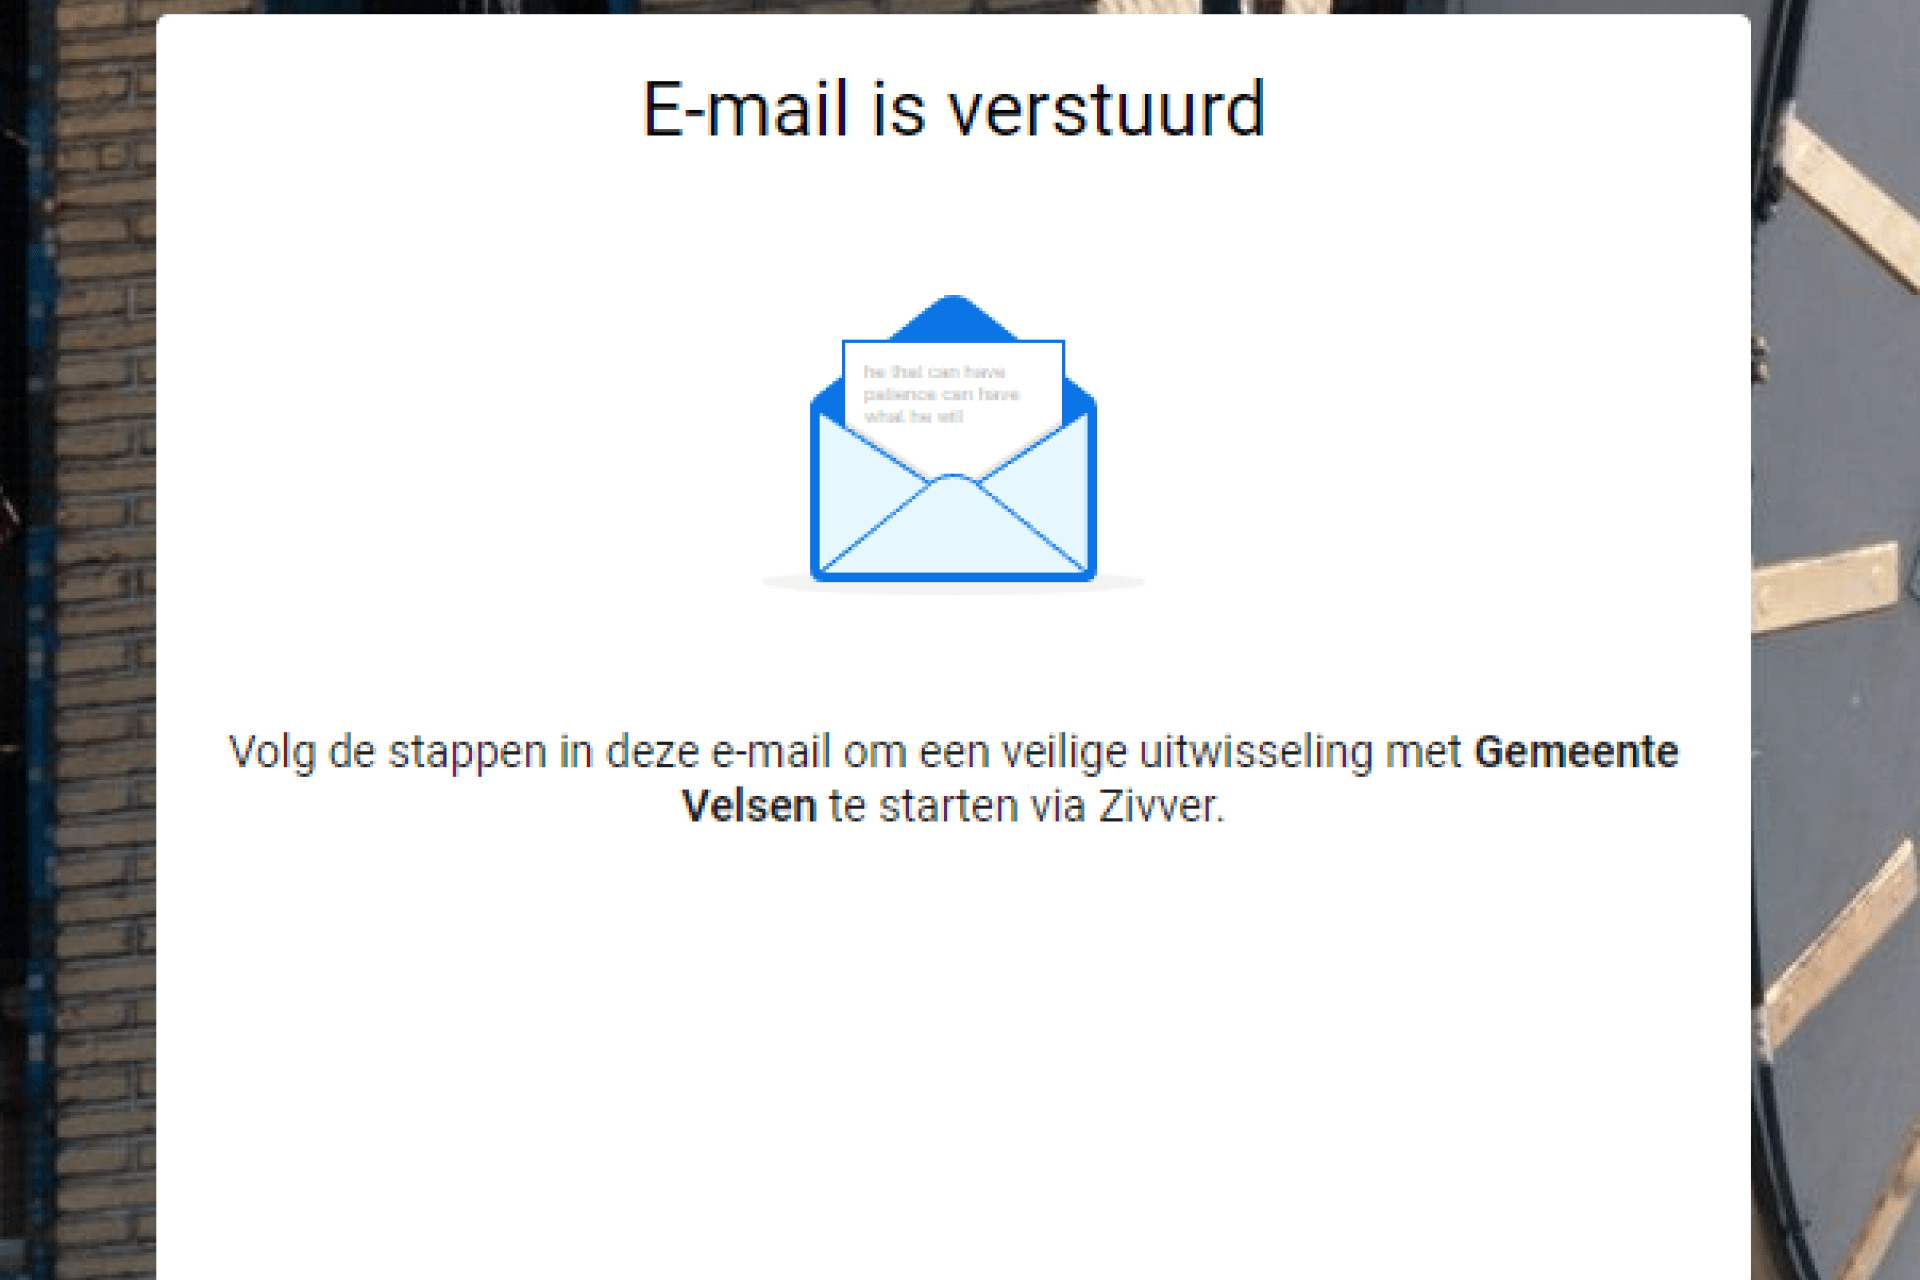 Zivver scherm: e-mail met uitleg is verstuurd